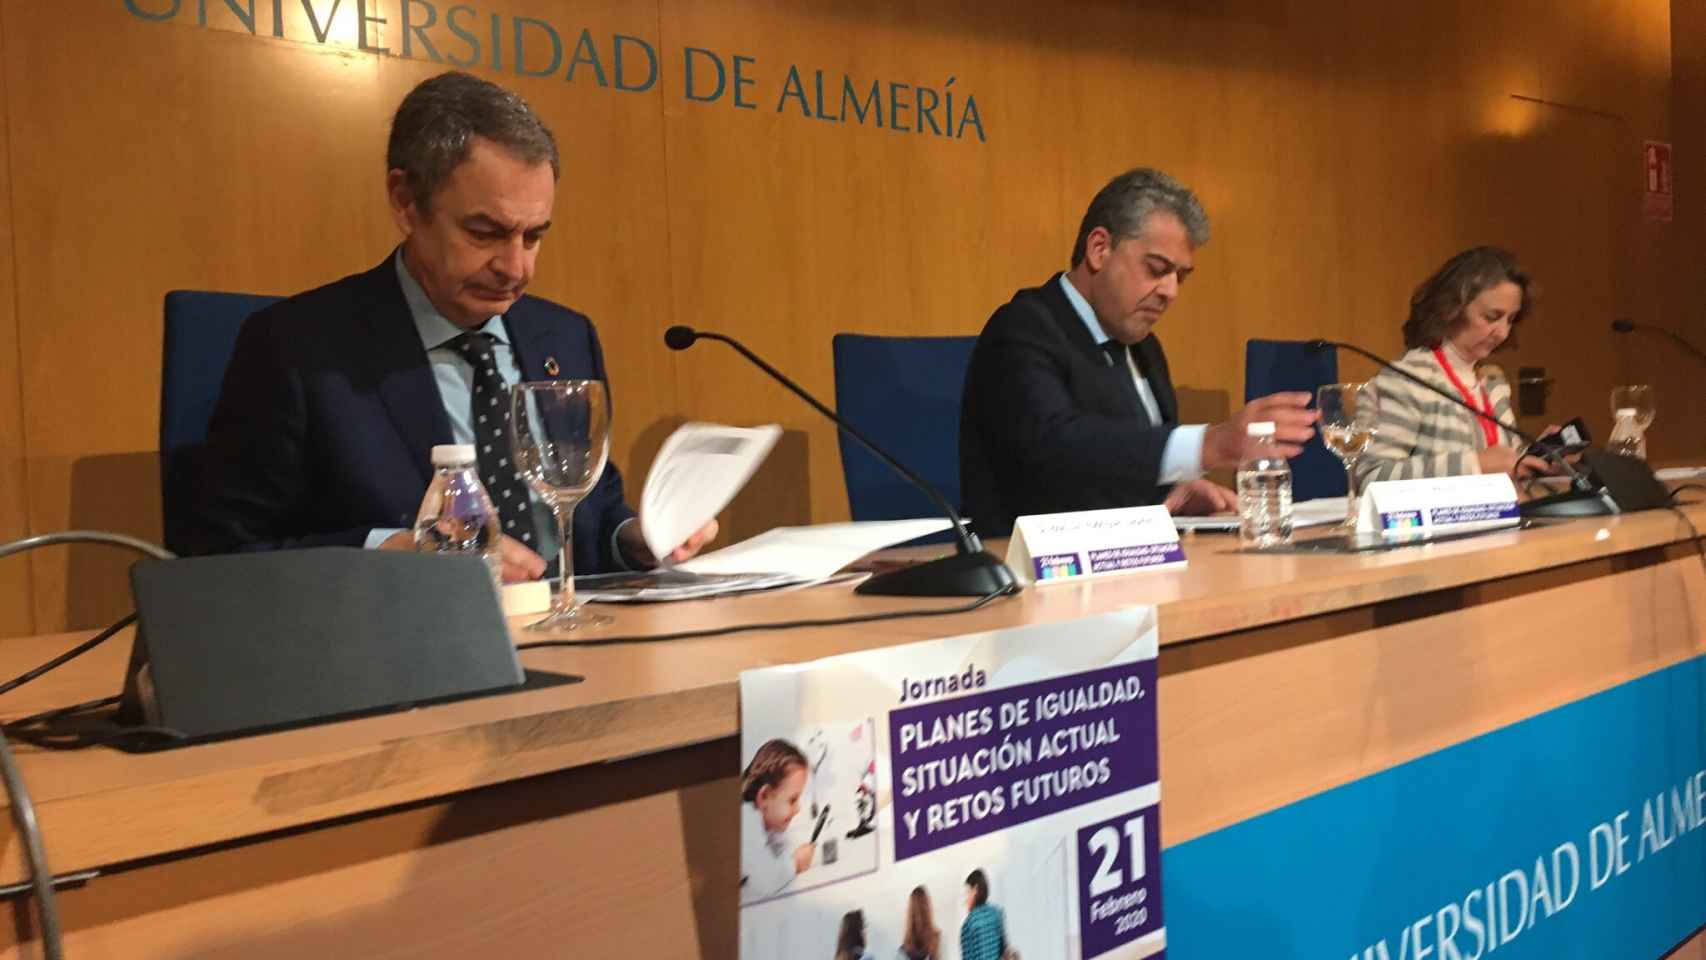 José Luis Rodríguez Zapatero este viernes en la Universidad de Almería.